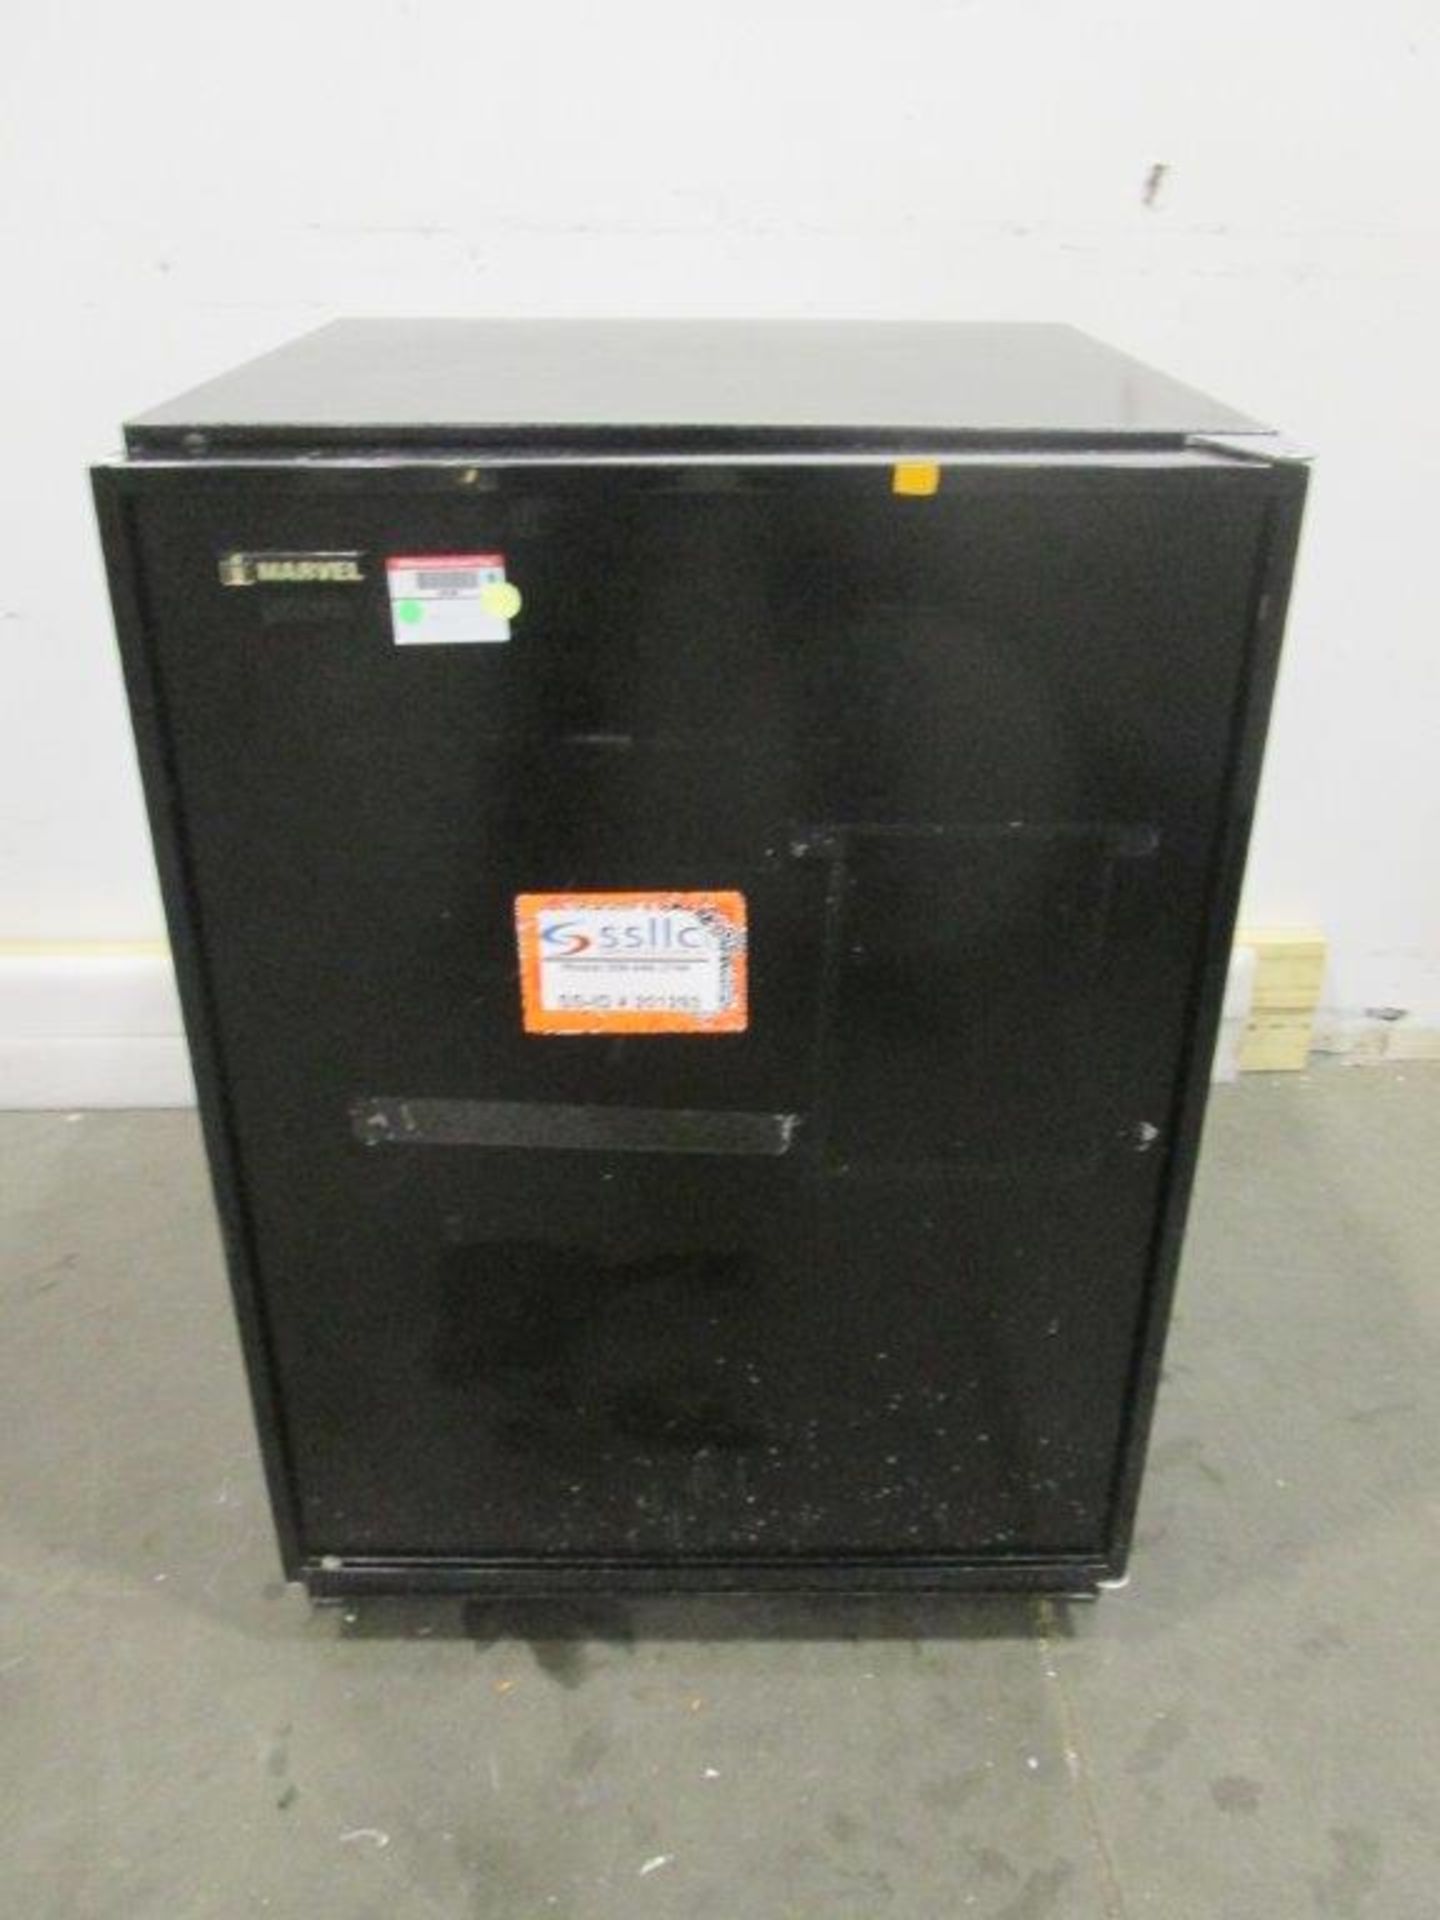 Marvel Undercounter Refrigerator